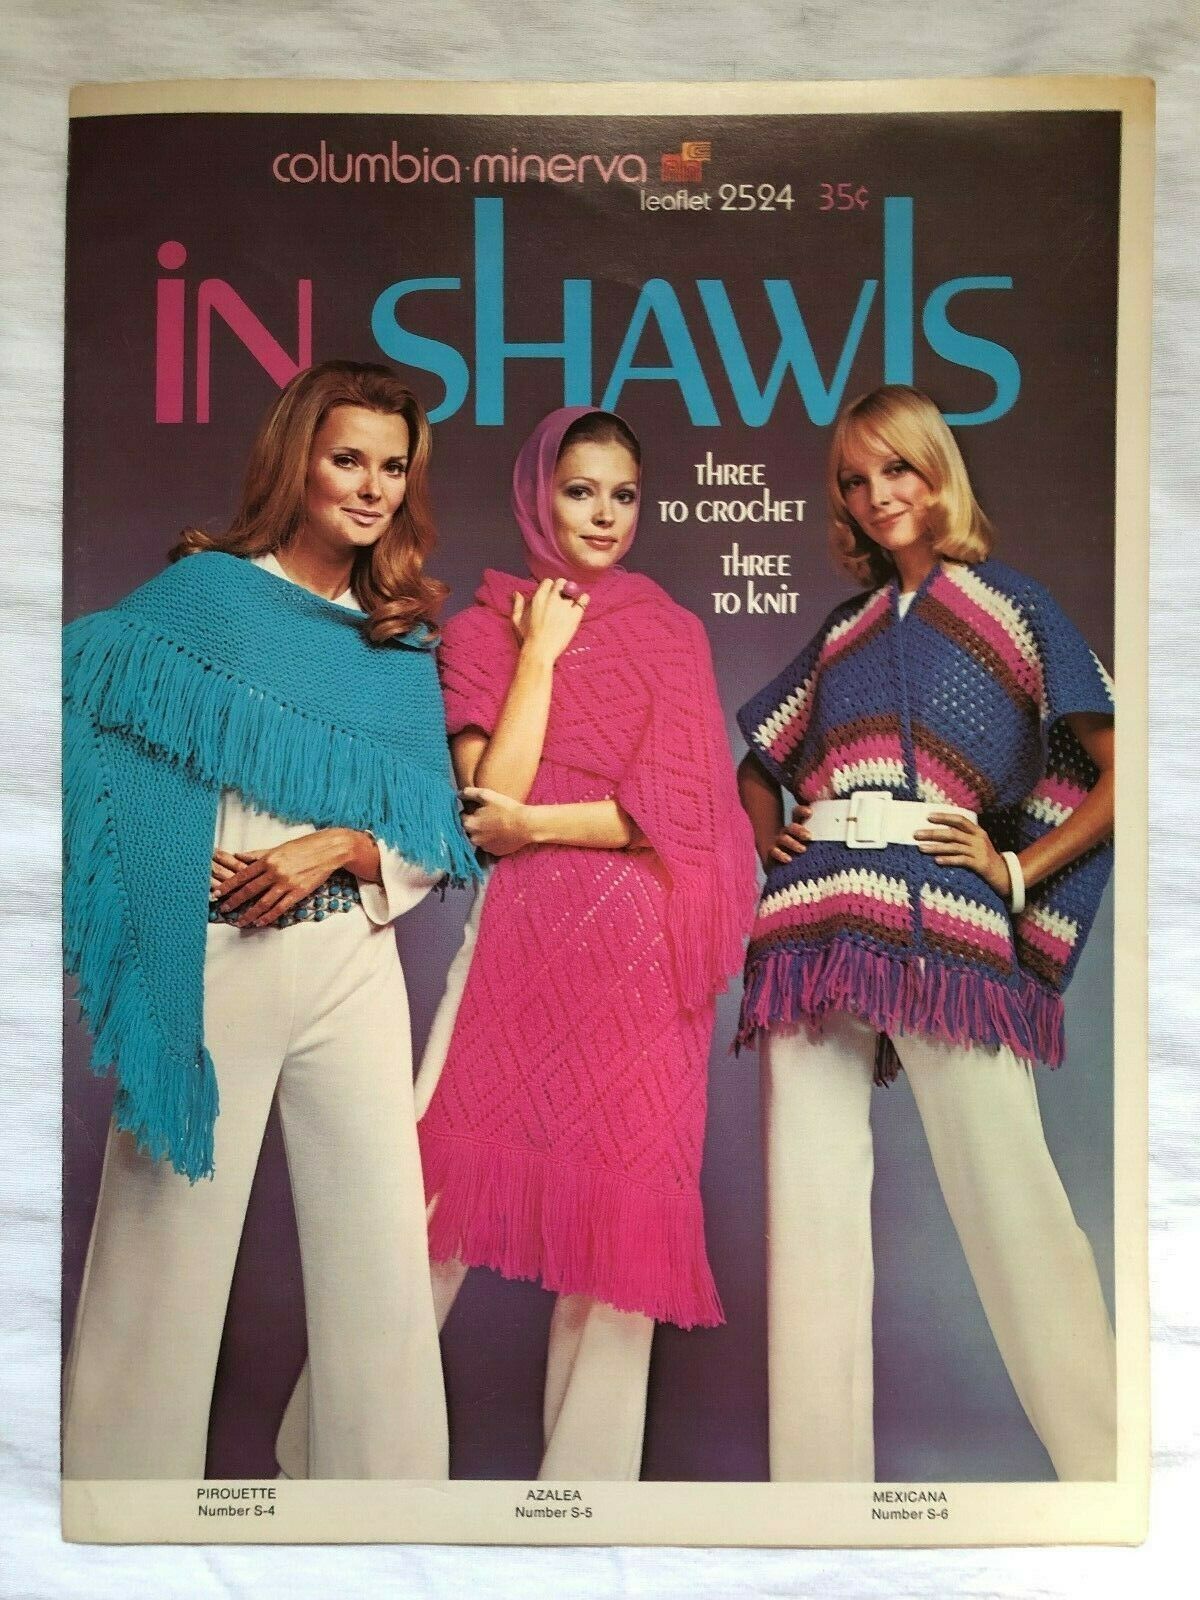 Vintage 1960's Columbia-Minerva Shawl Pattern Leaflet #2524 - $3.00